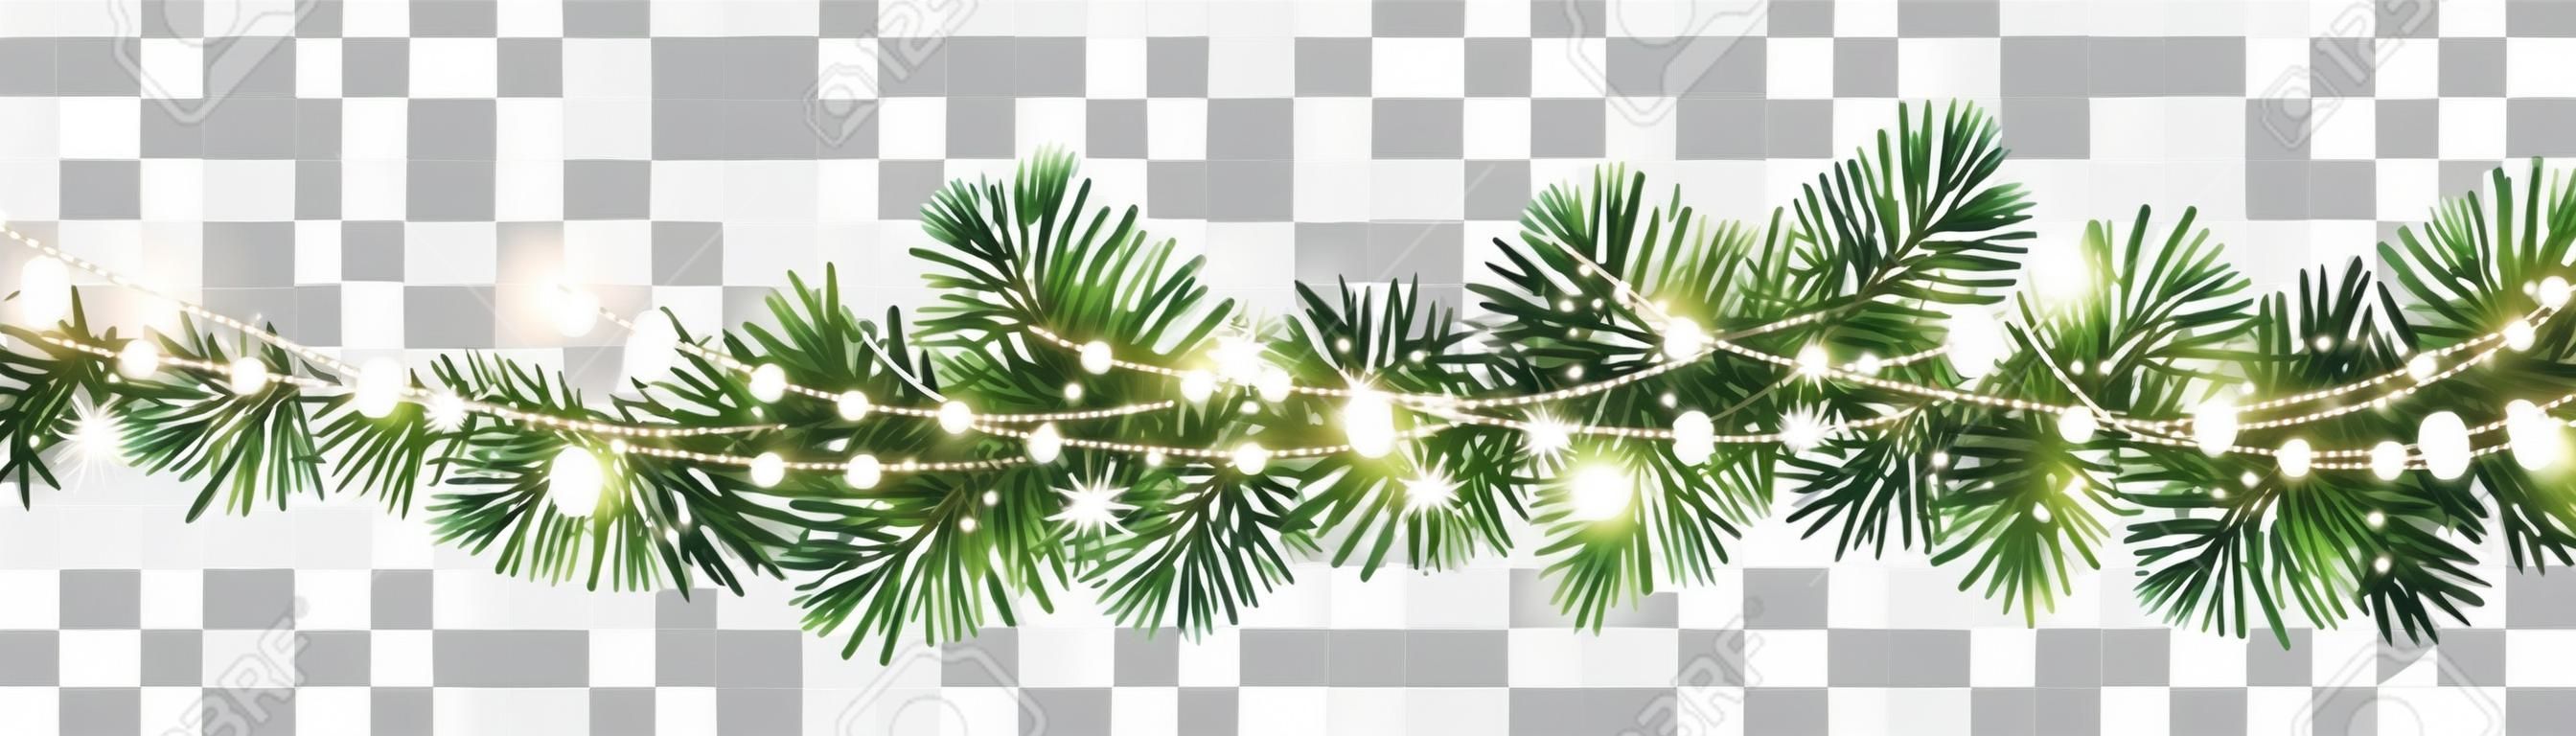 Guirlanda de Natal decorativa sem emenda do vetor com ramos coníferas e corrente de luz brilhante no fundo transparente